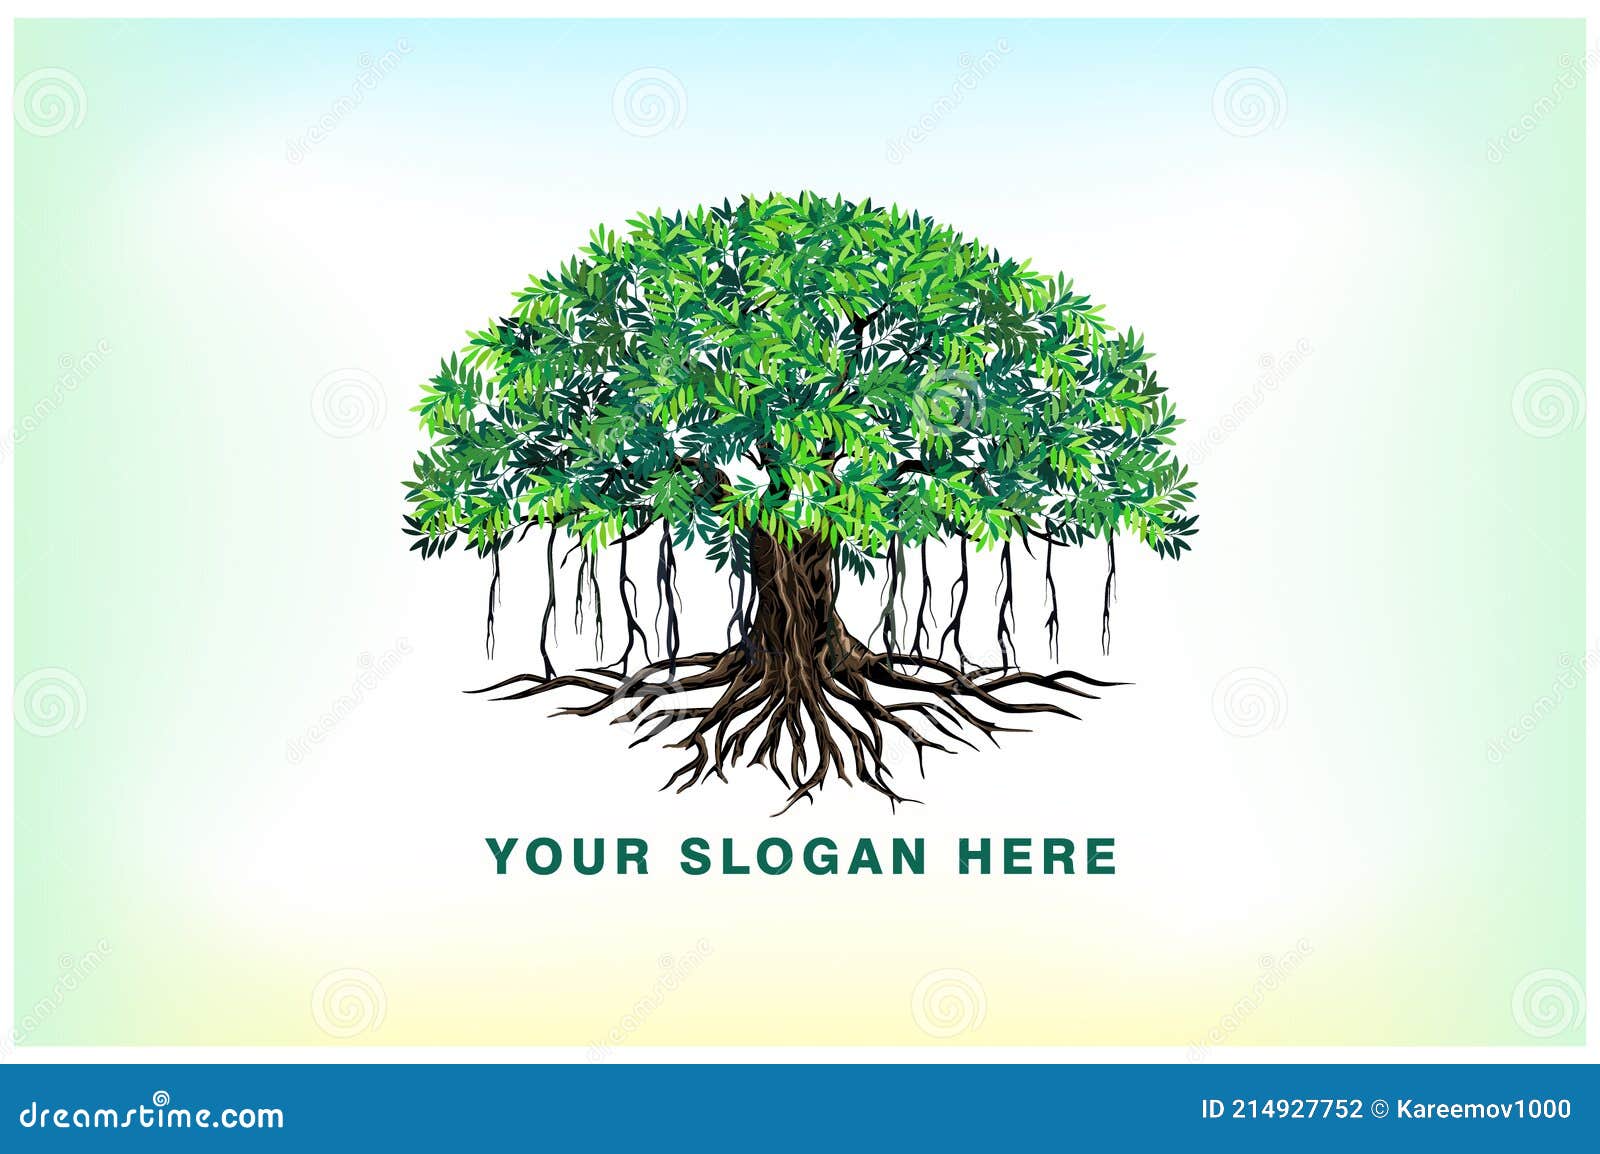 banyan tree and roots logo